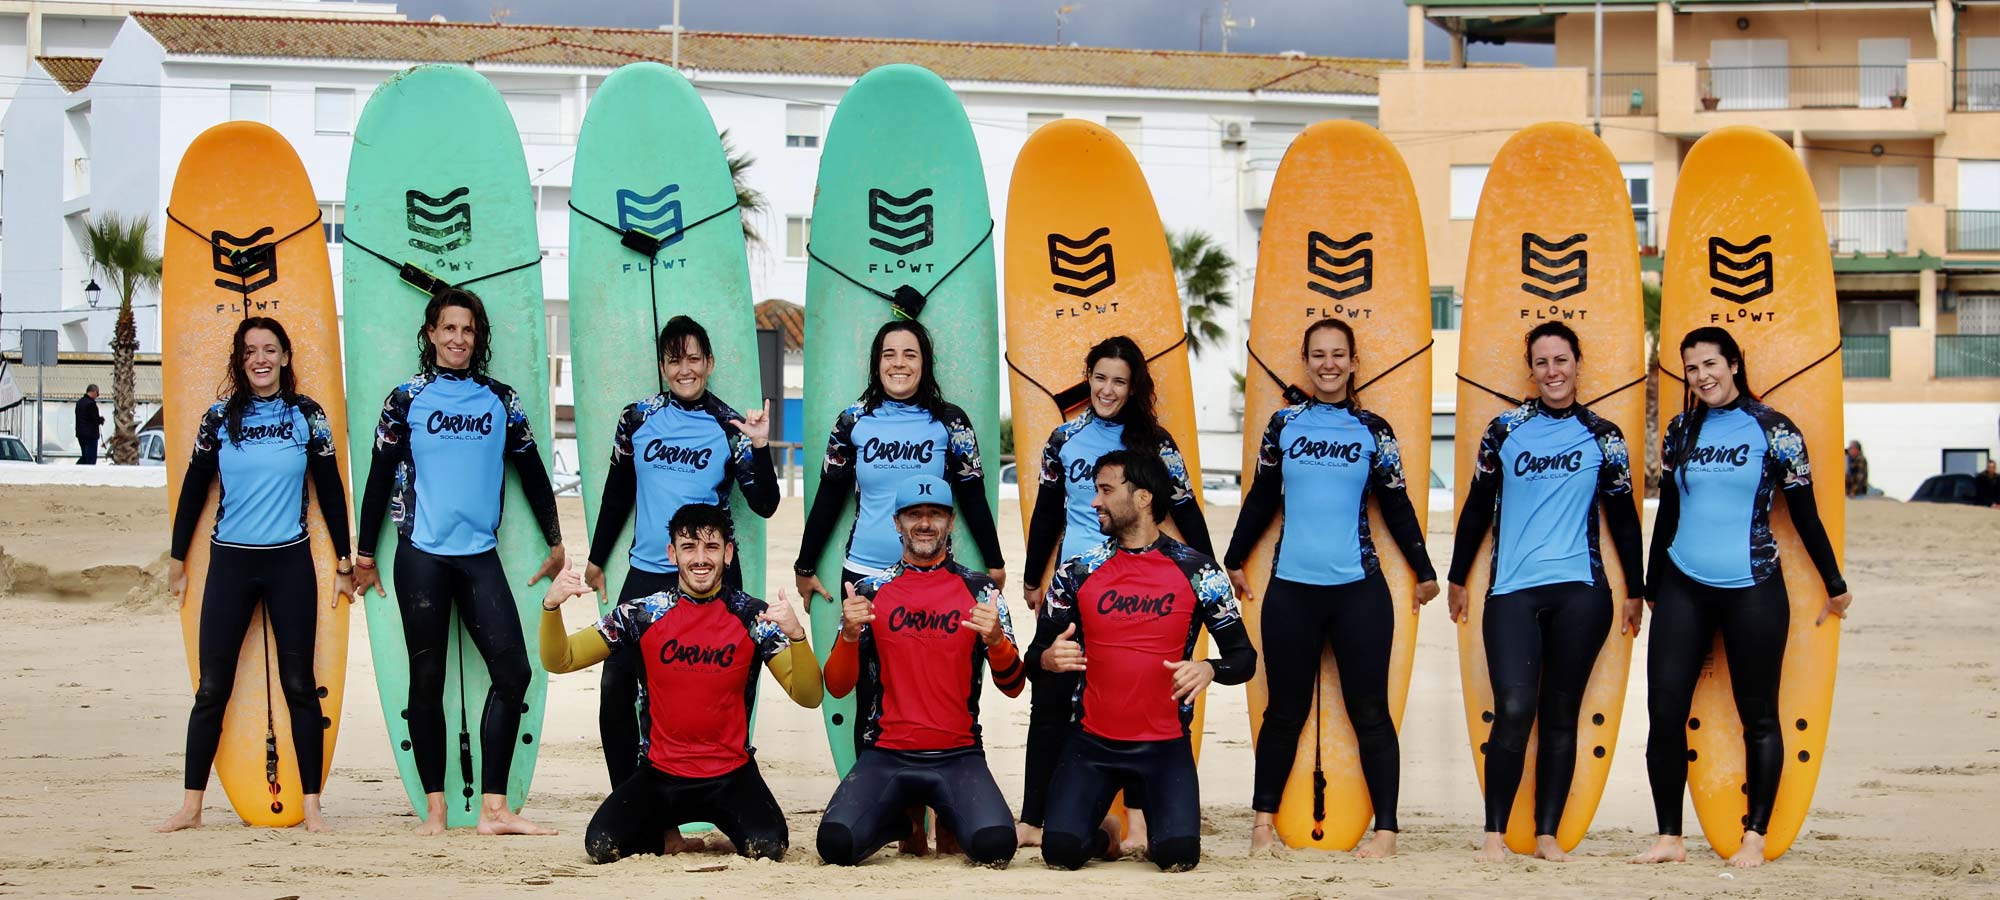 Las Tablas Softboard "corchopanes" que hemos estado usando en nuestra Escuela de Surf en El Palmar